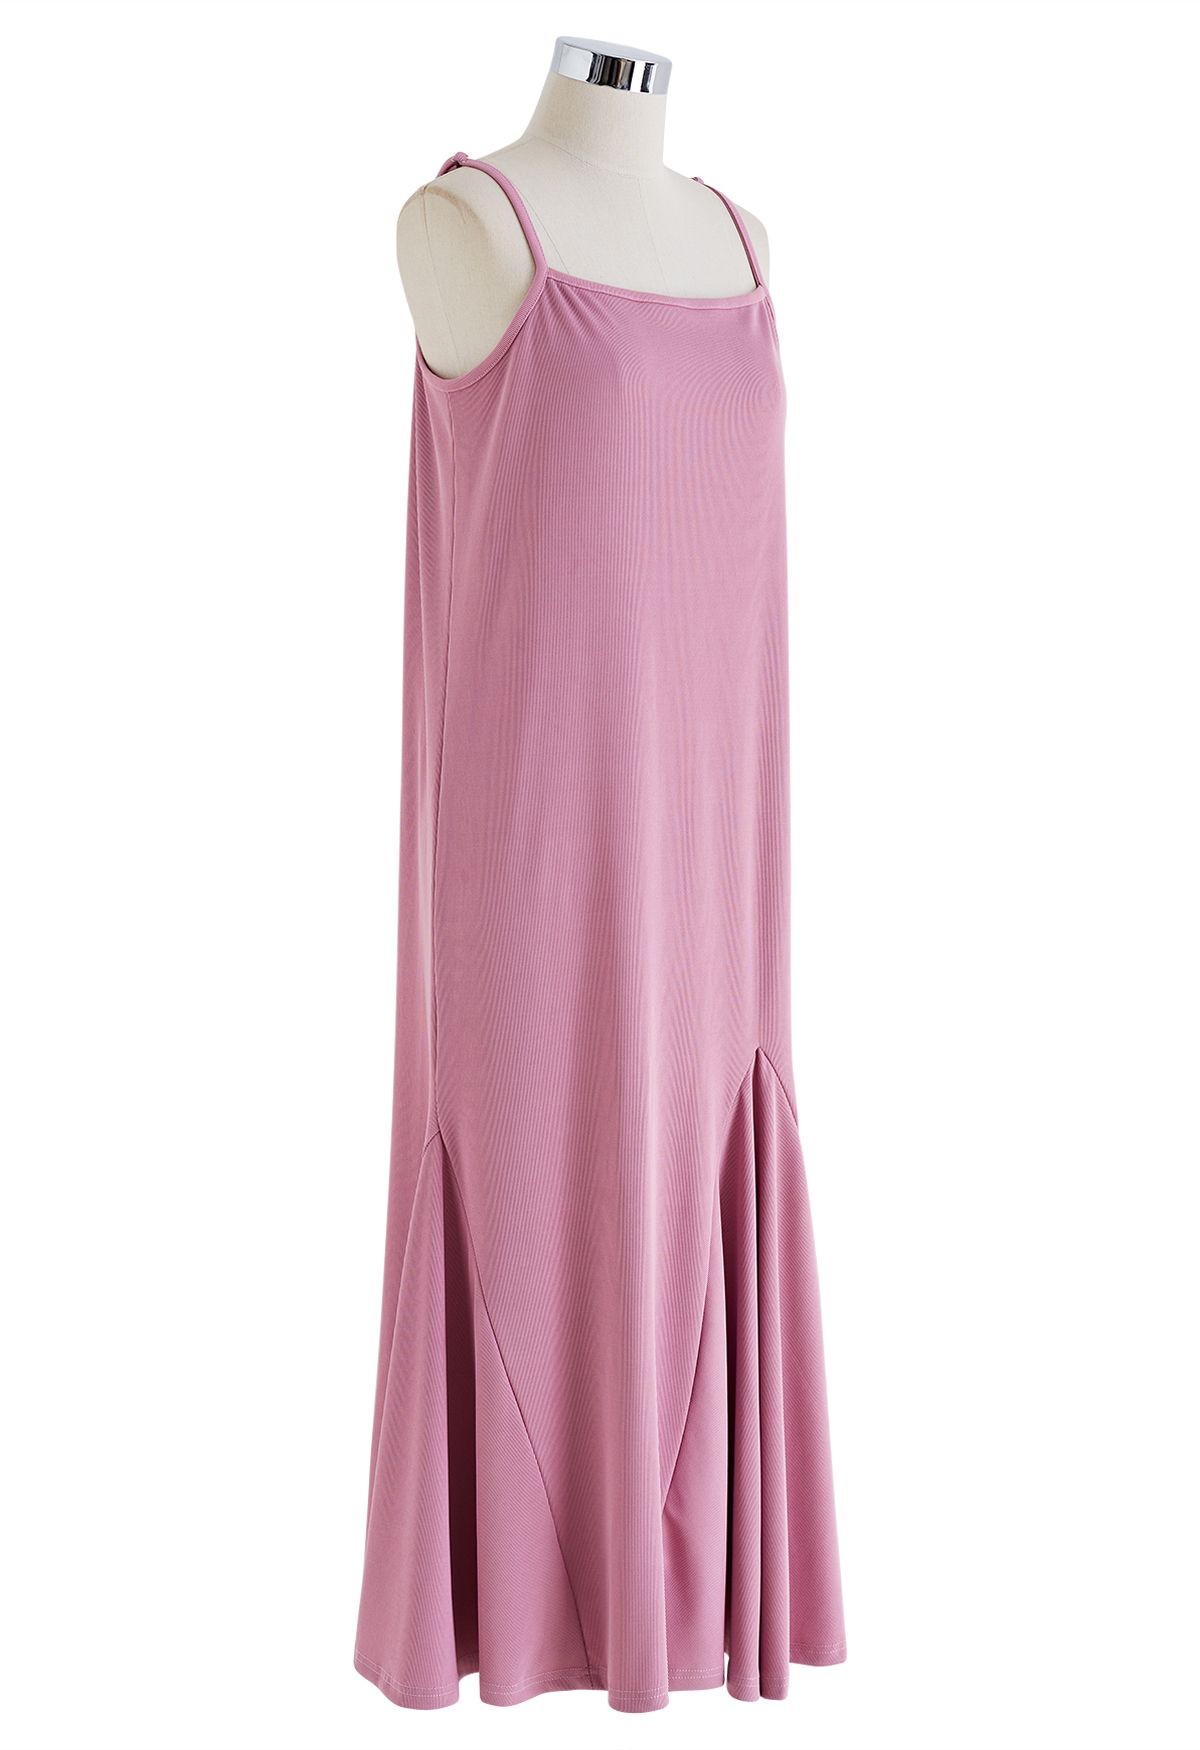 Plain Color Frilling Hem Cami Dress in Pink